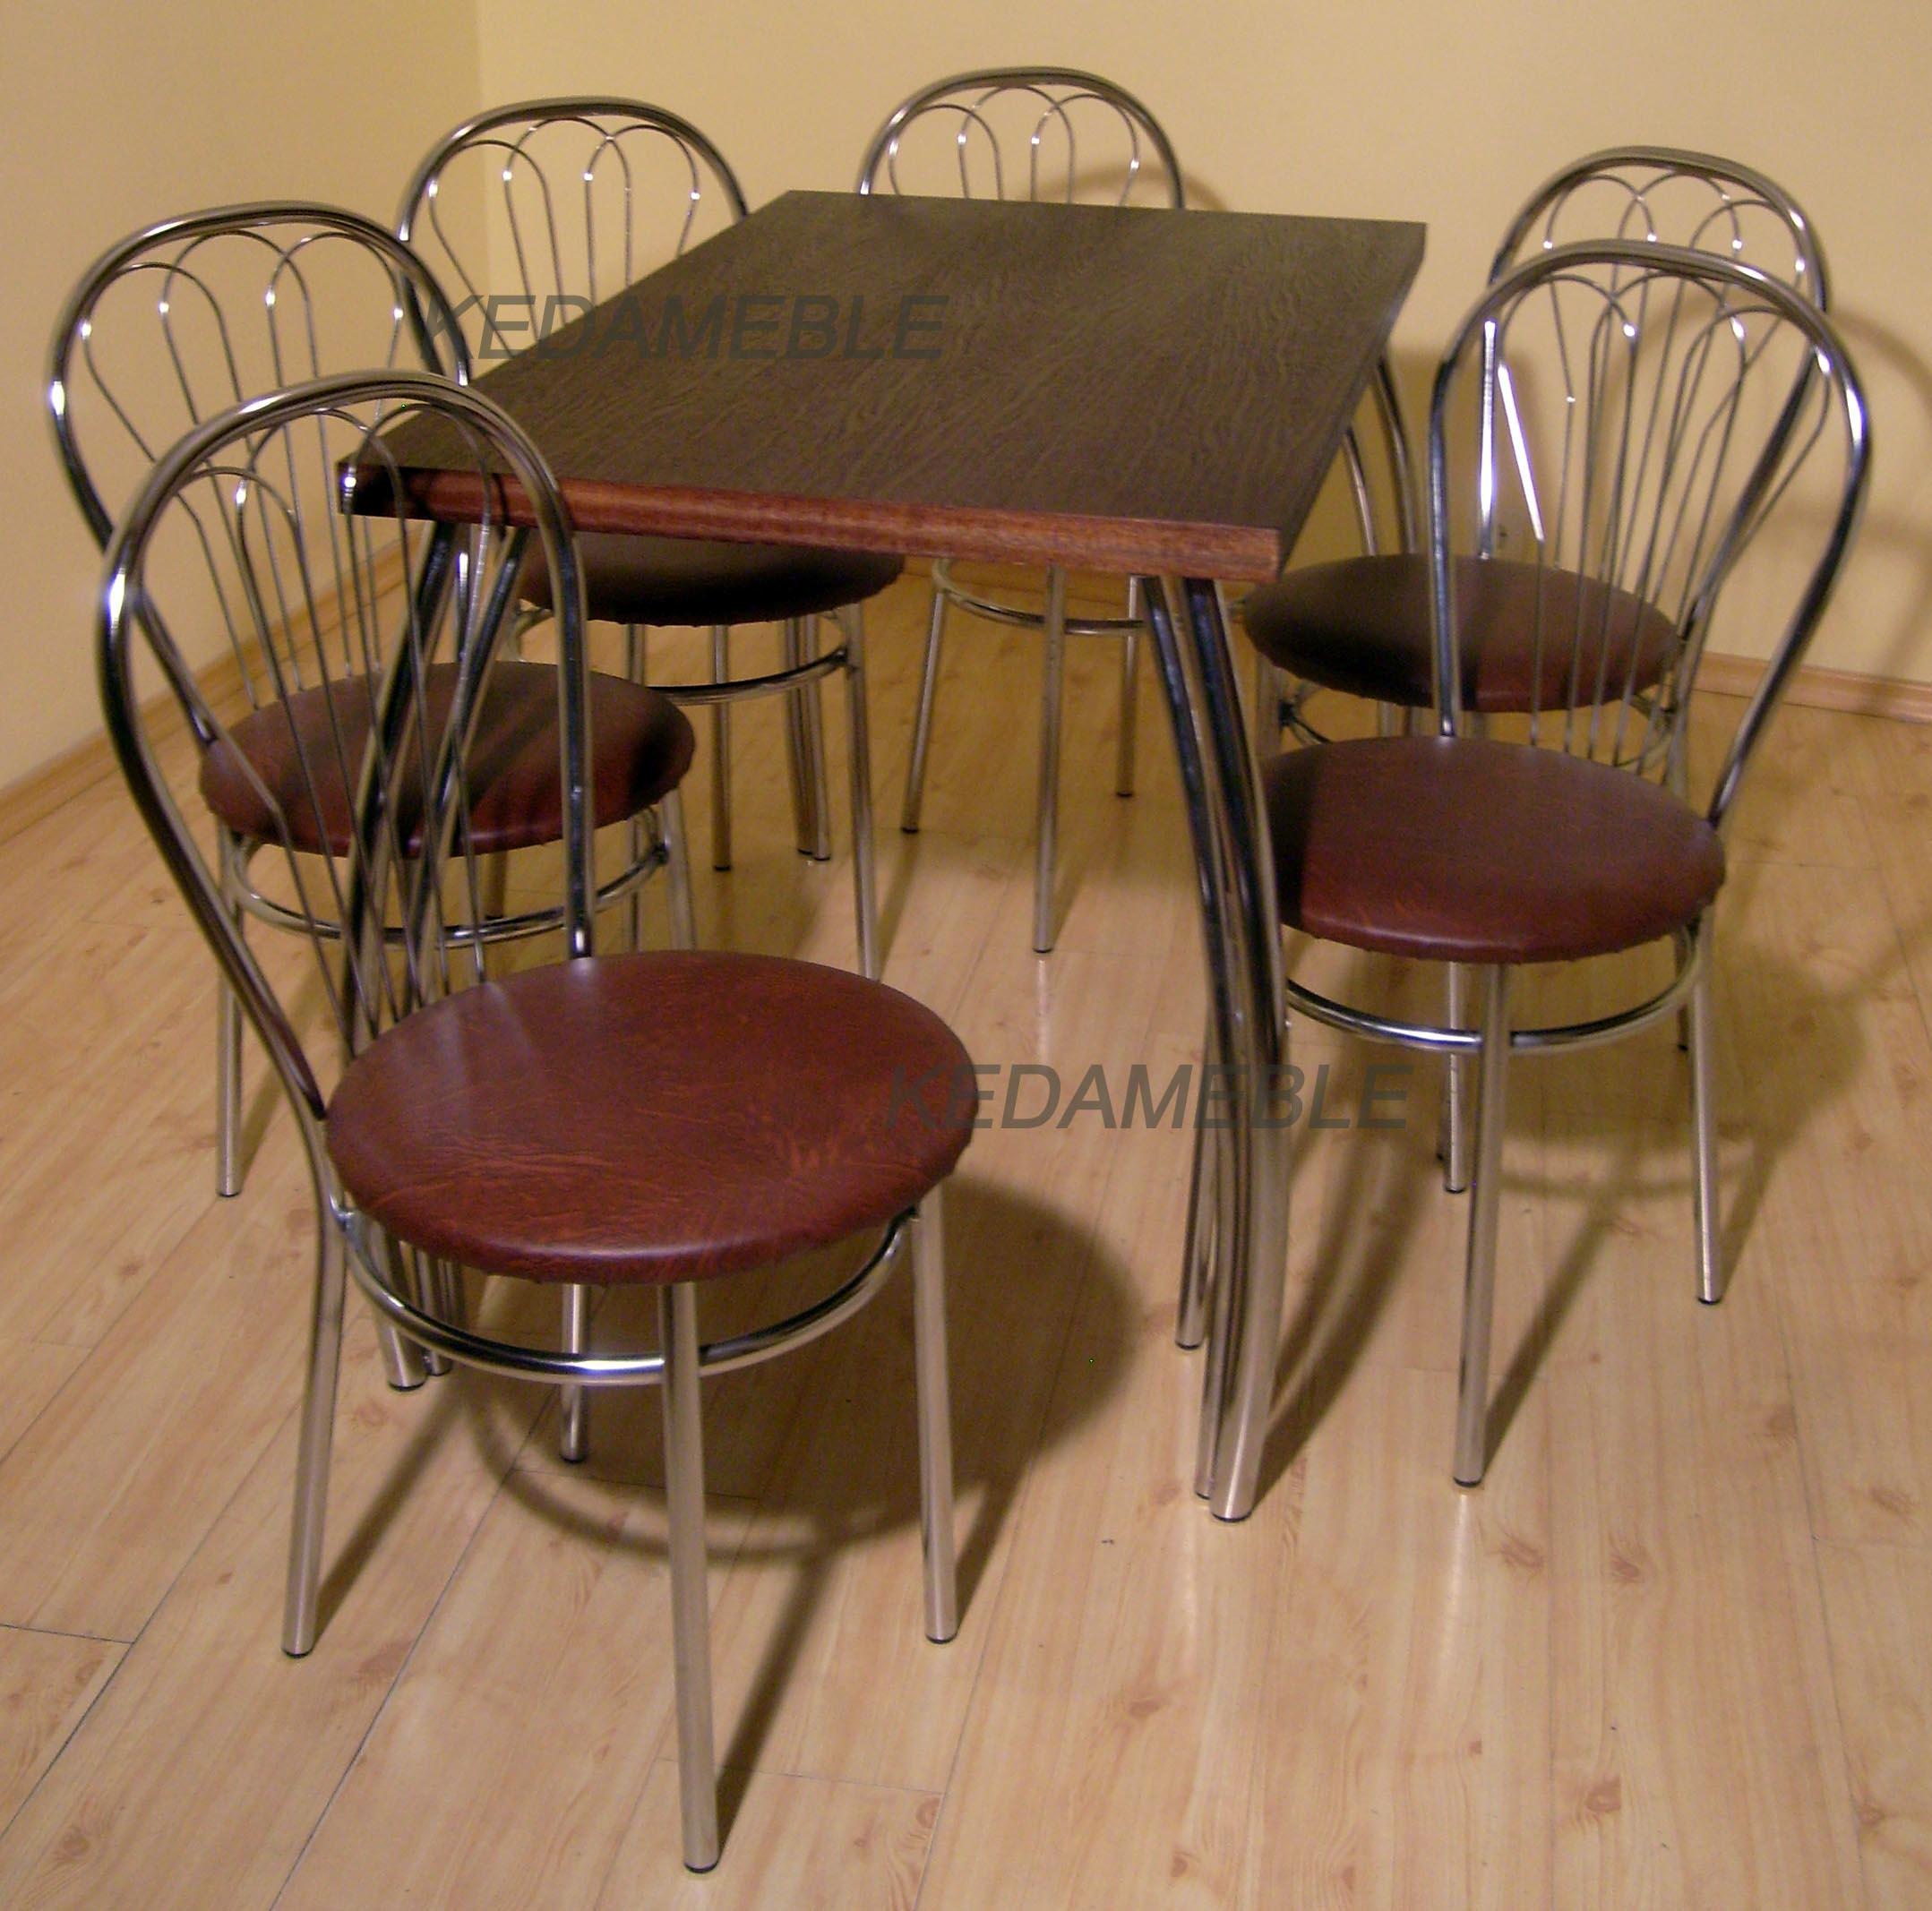 stół dacota krzesła venus